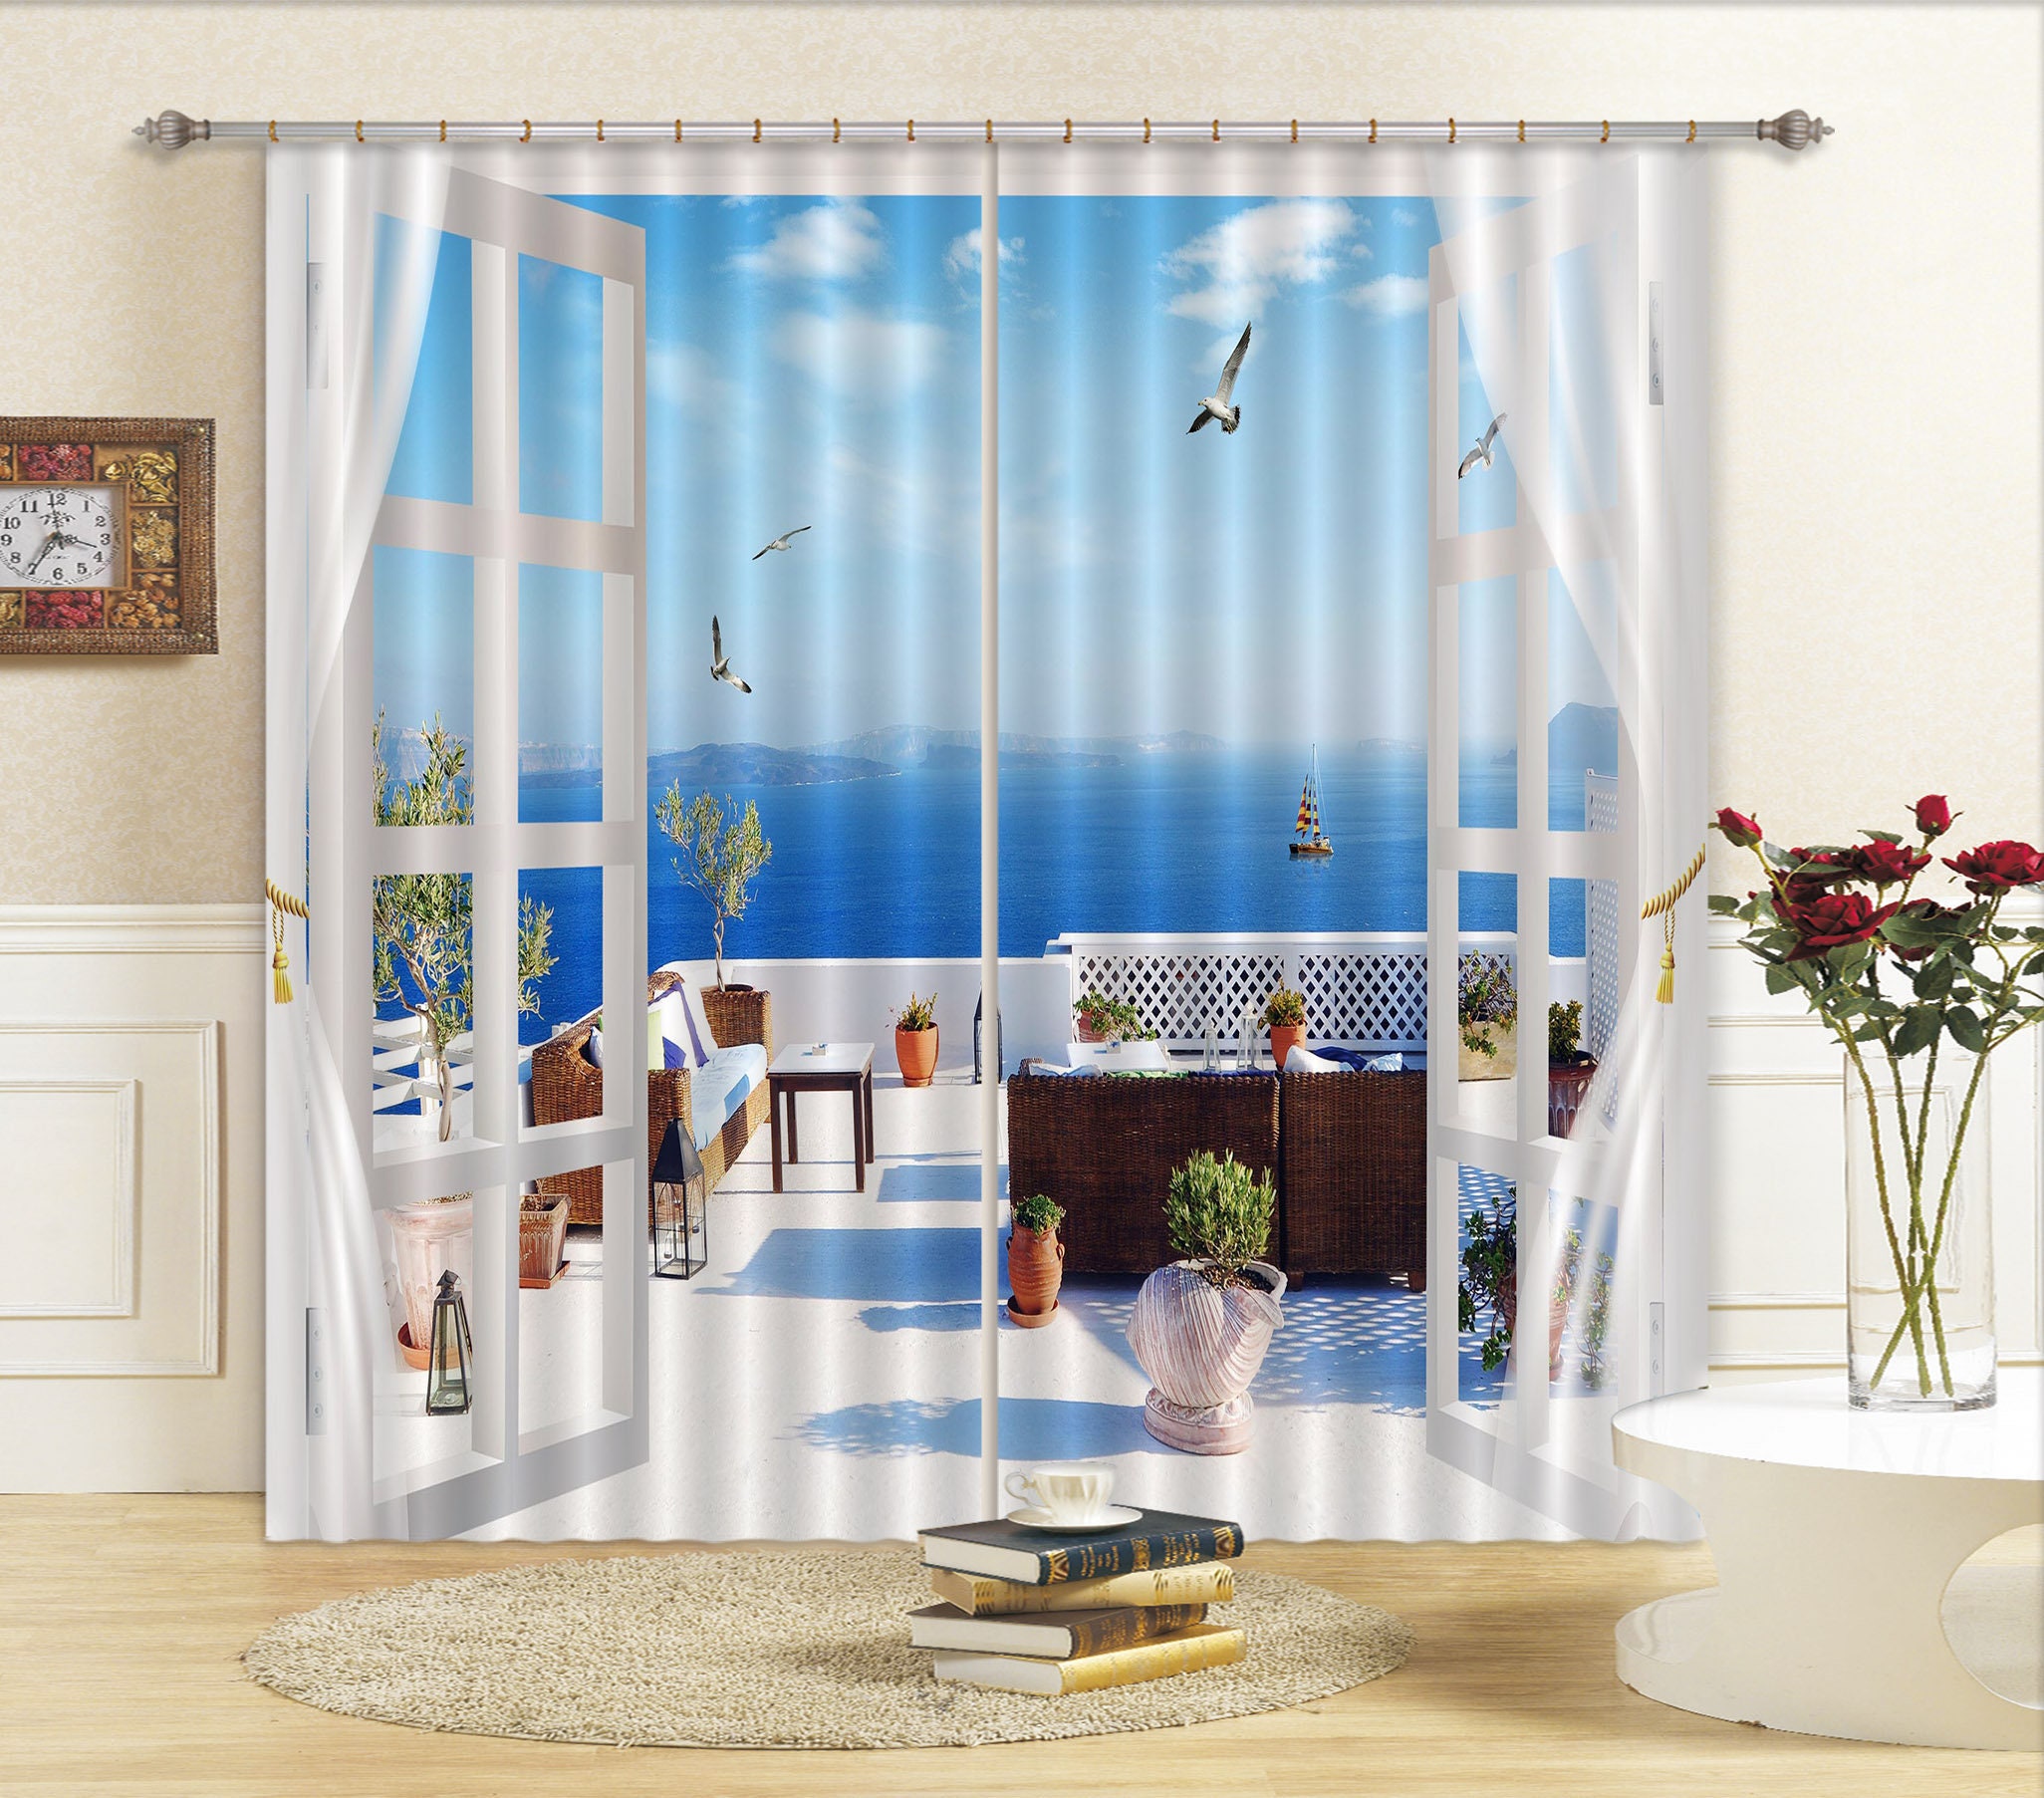 Fantastic Space Landscape 3D Curtain Blockout Photo Print Curtains Drape Fabric 